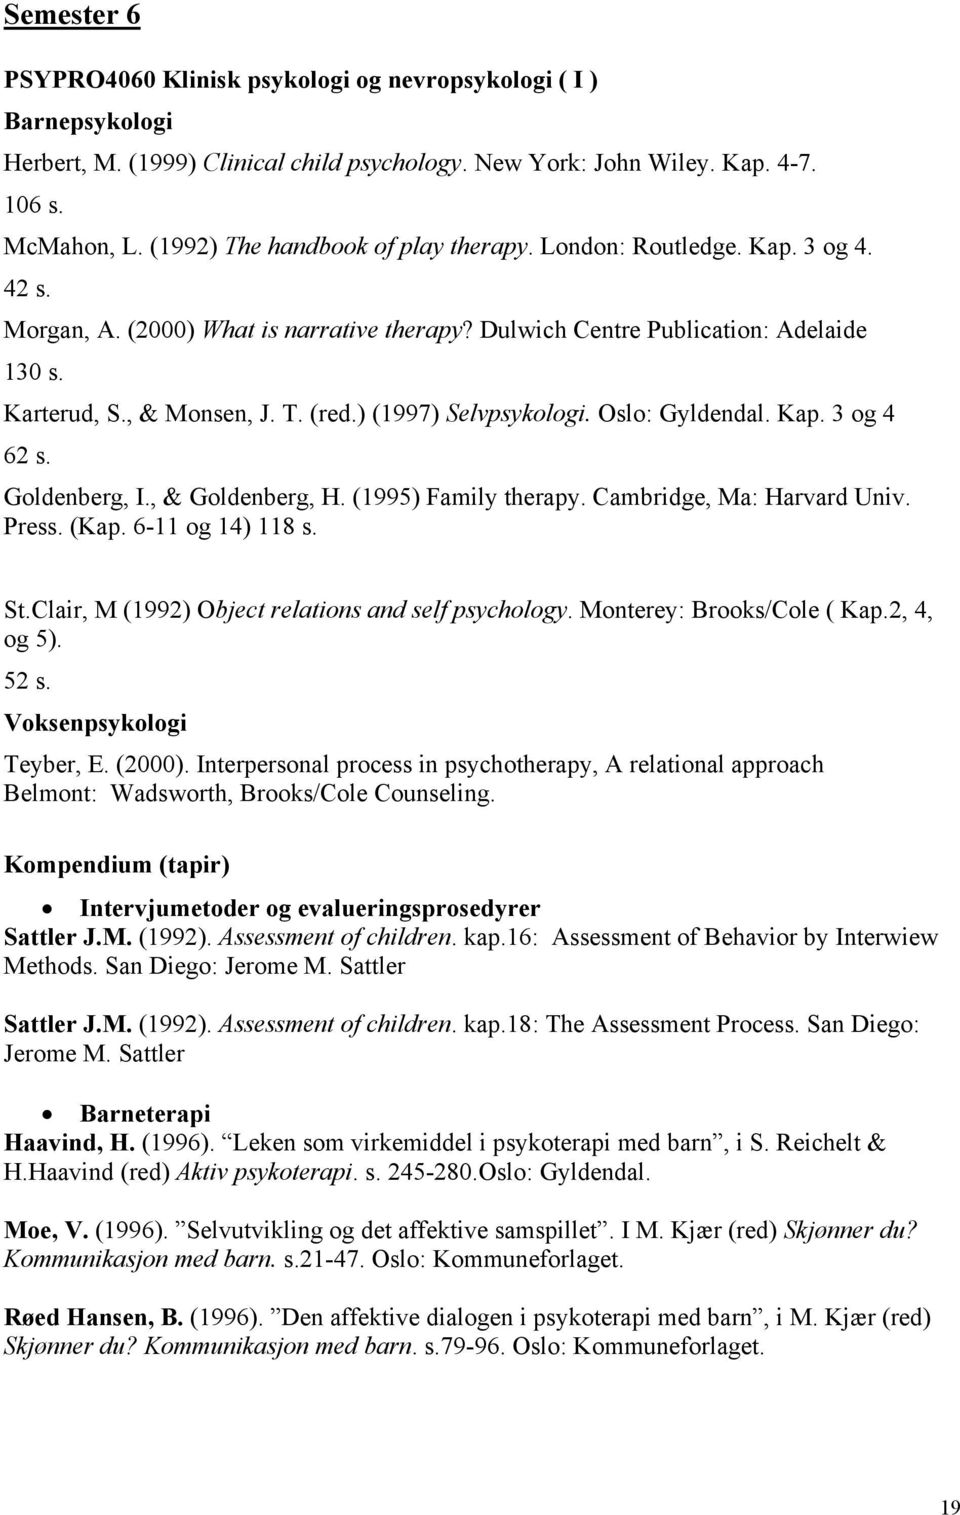 ) (1997) Selvpsykologi. Oslo: Gyldendal. Kap. 3 og 4 62 s. Goldenberg, I., & Goldenberg, H. (1995) Family therapy. Cambridge, Ma: Harvard Univ. Press. (Kap. 6-11 og 14) 118 s. St.